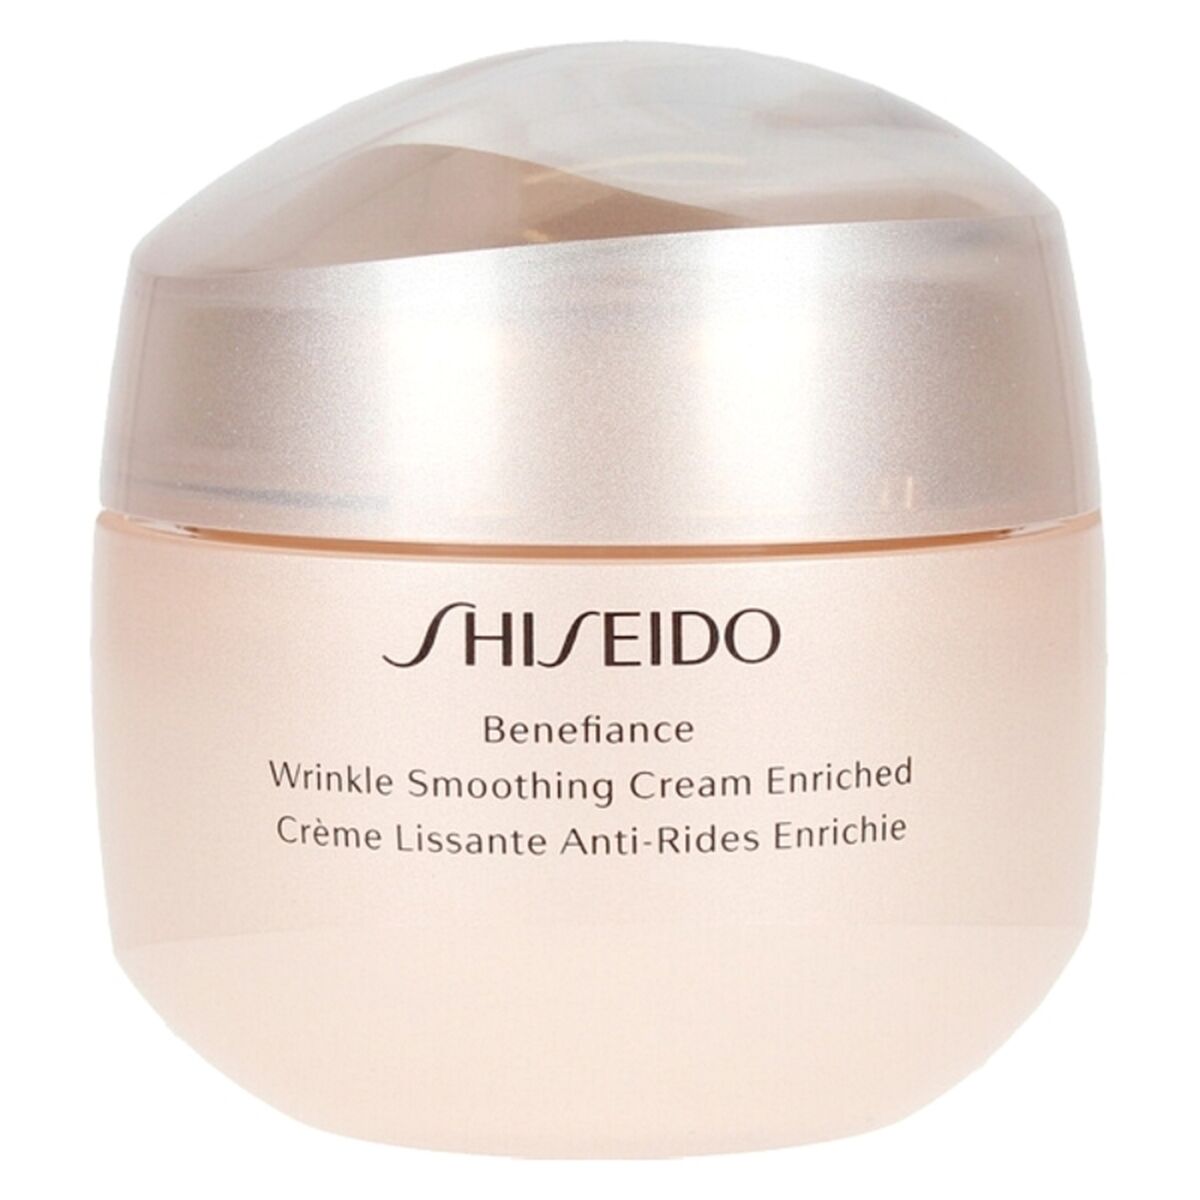 Anti-rynke creme Benefiance Rynkeudjævning Shiseido (75 ml)